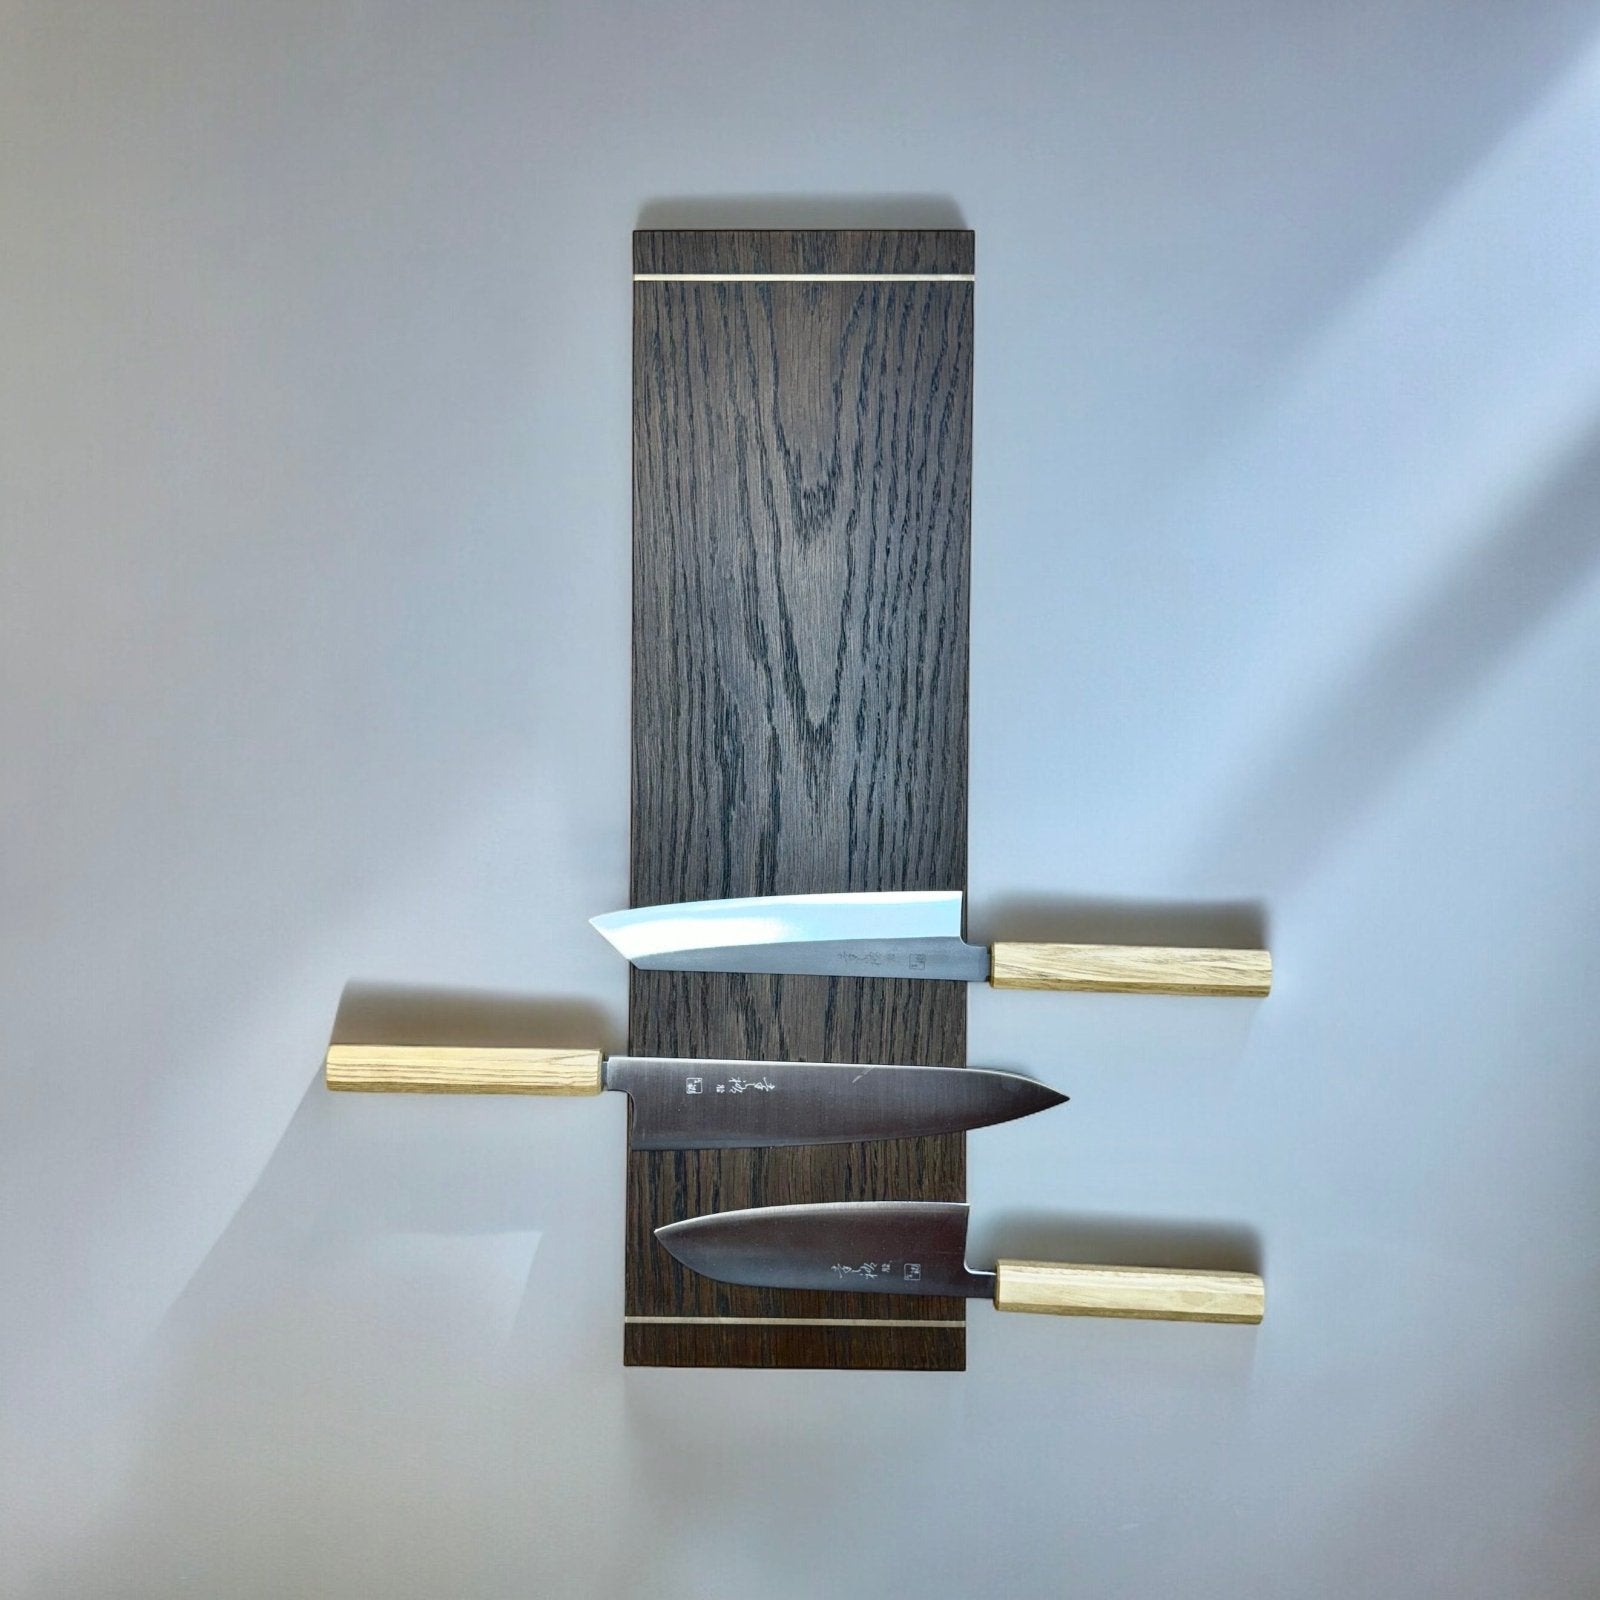 Rune - Jakobsen Woodworks 'Defined' bred knivmagnet_2 by Rune - Jakobsen Design